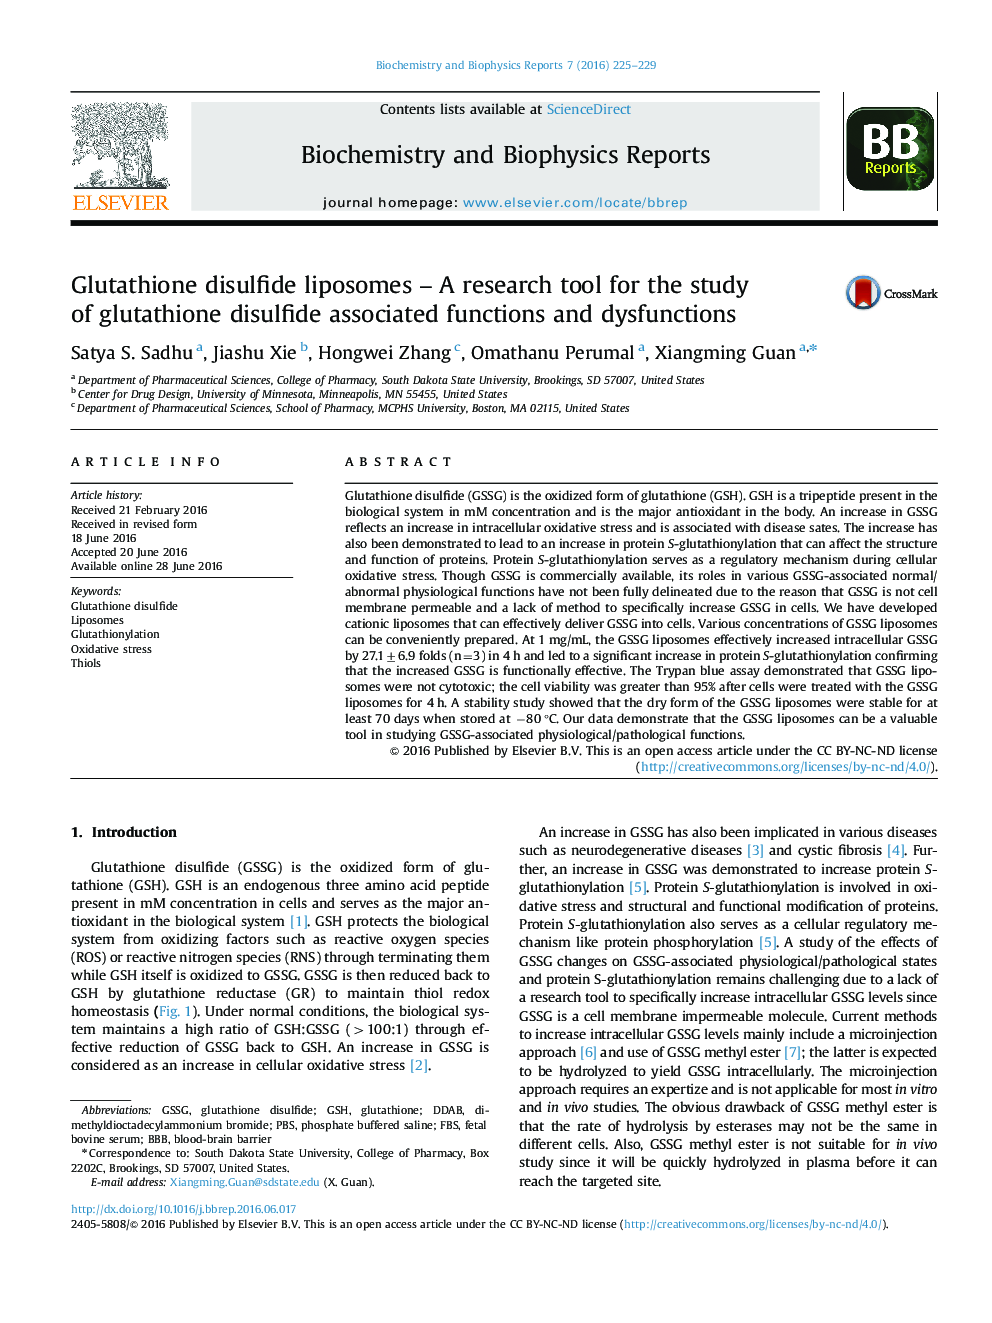 لیپوزوم گلوتاتیون دی سولفید؛ یک ابزار تحقیق برای مطالعه توابع و اختلالات مرتبط با دی سولفید گلوتاتیون  